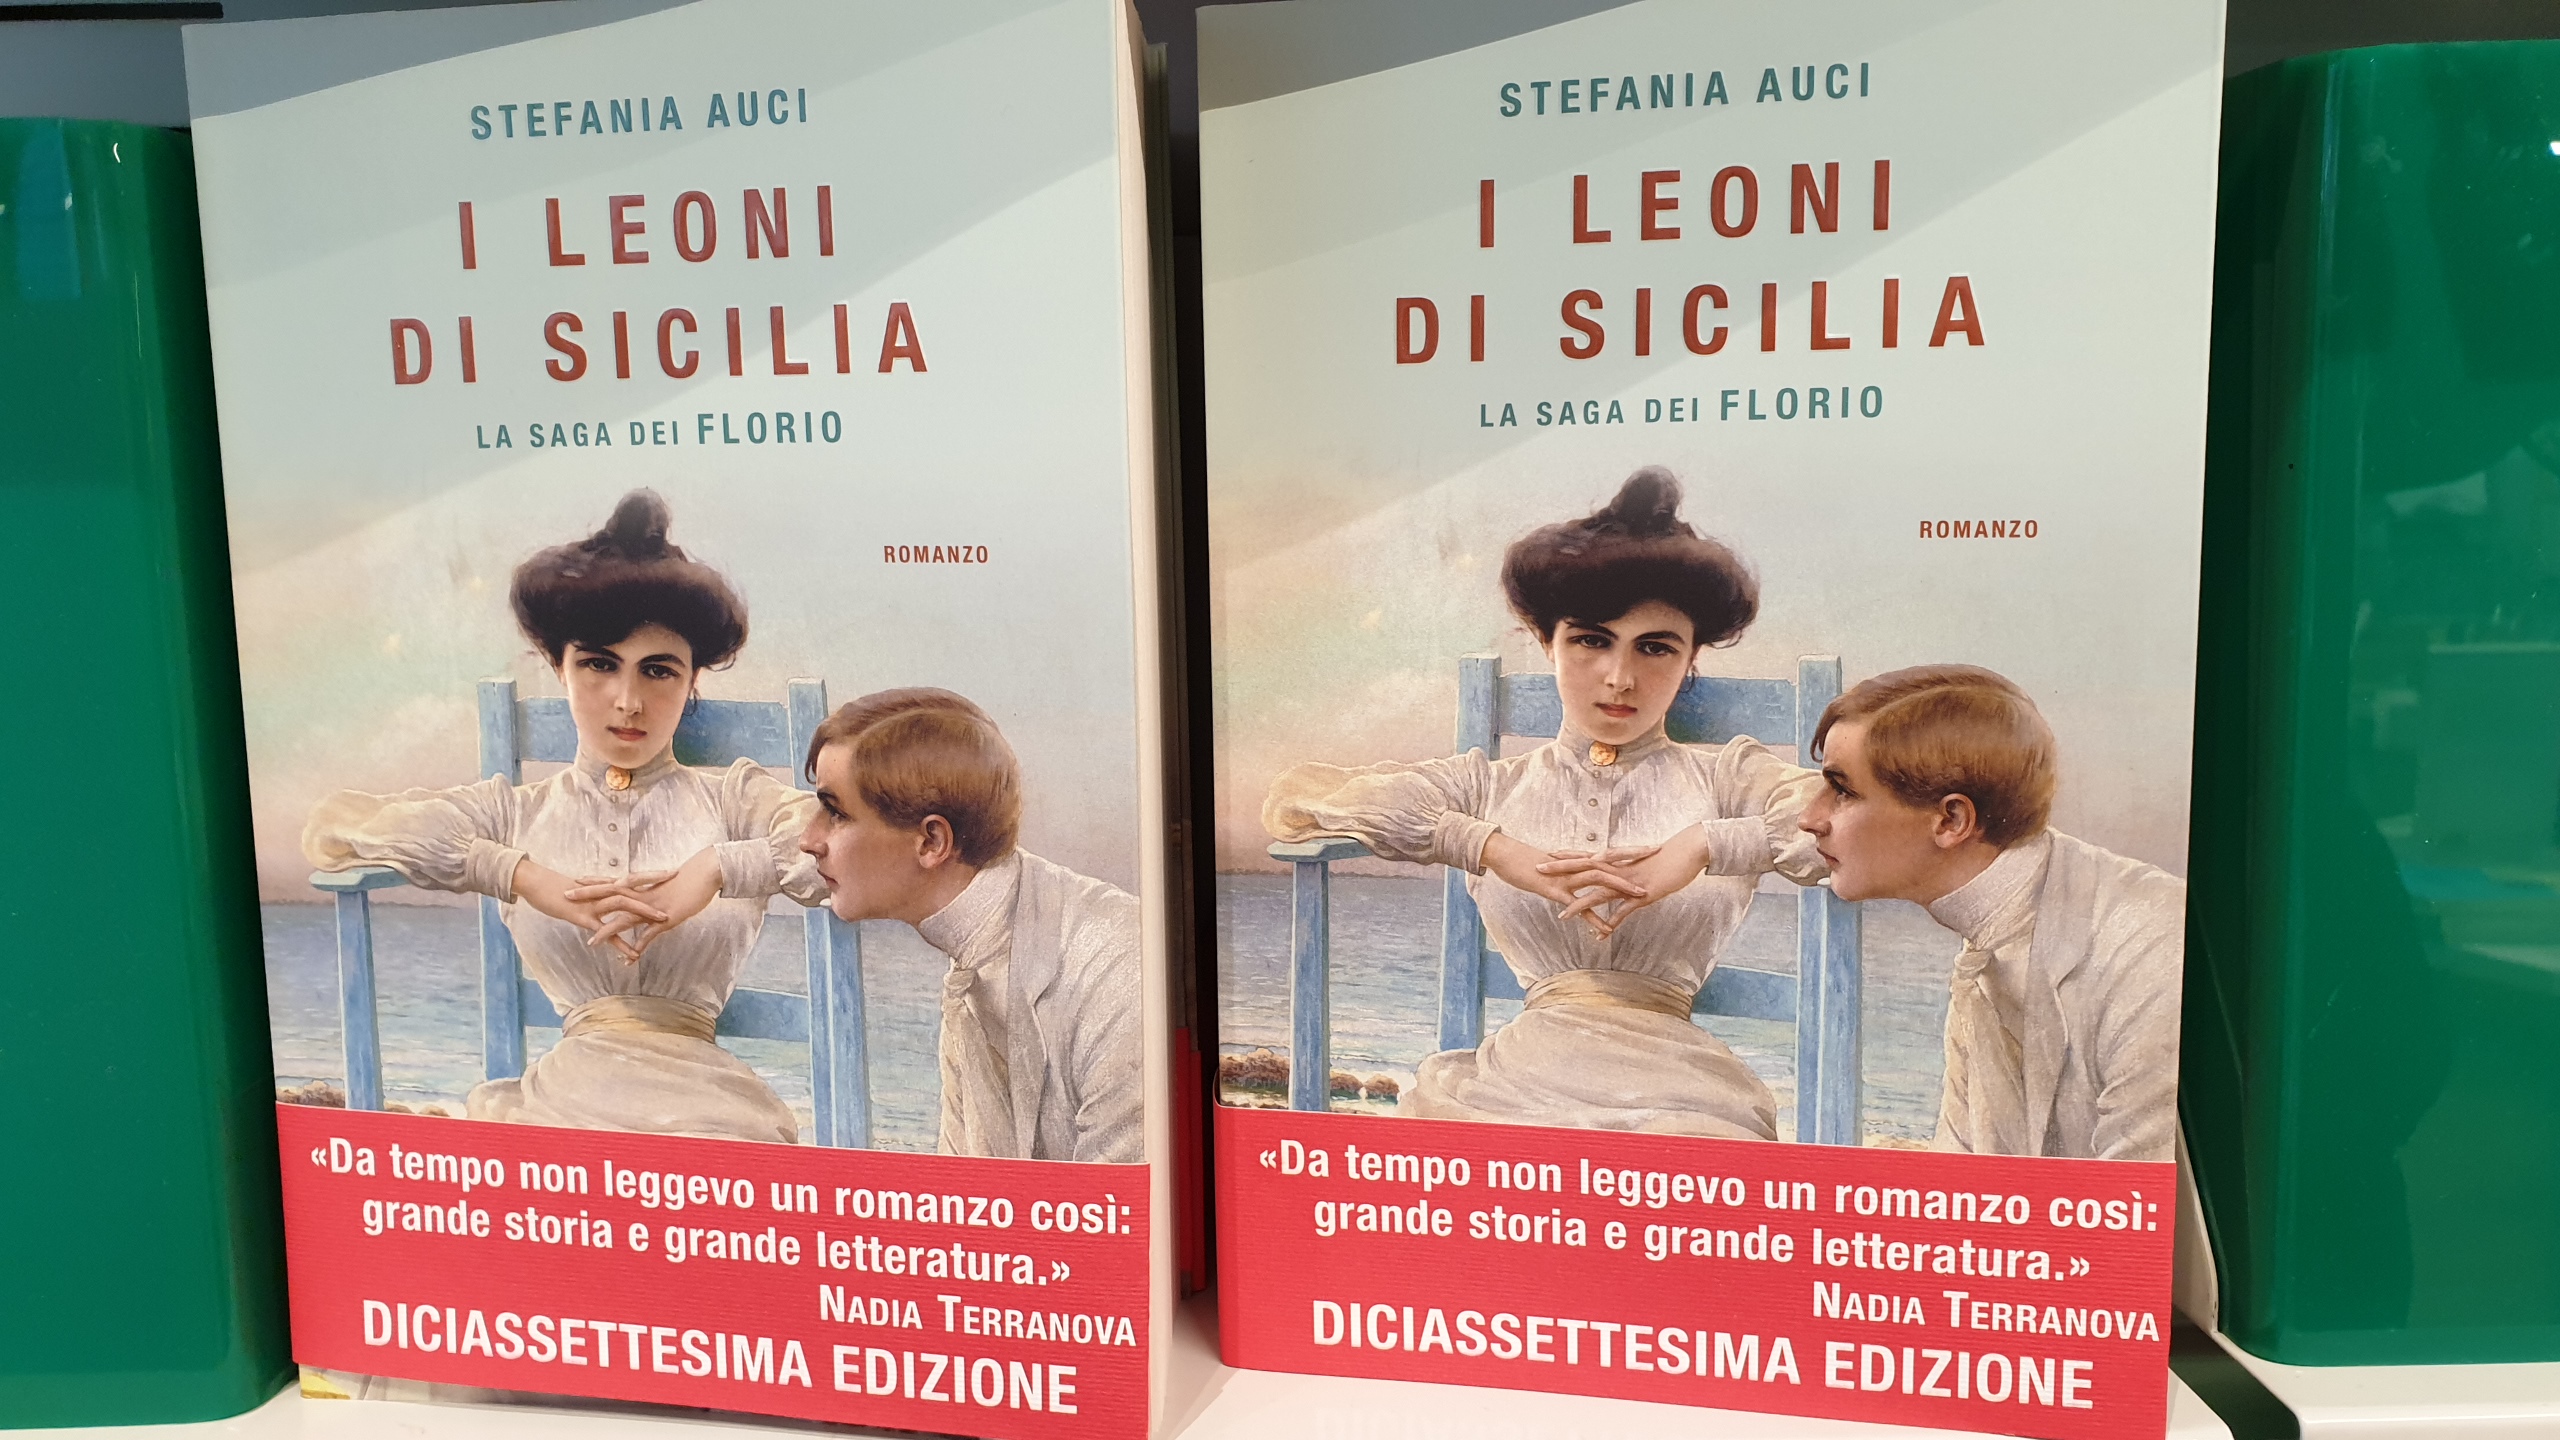 Bilancio libri 2019 "I Leoni di Sicilia" il più venduto. Bene anche Carofiglio Libertà Piacenza